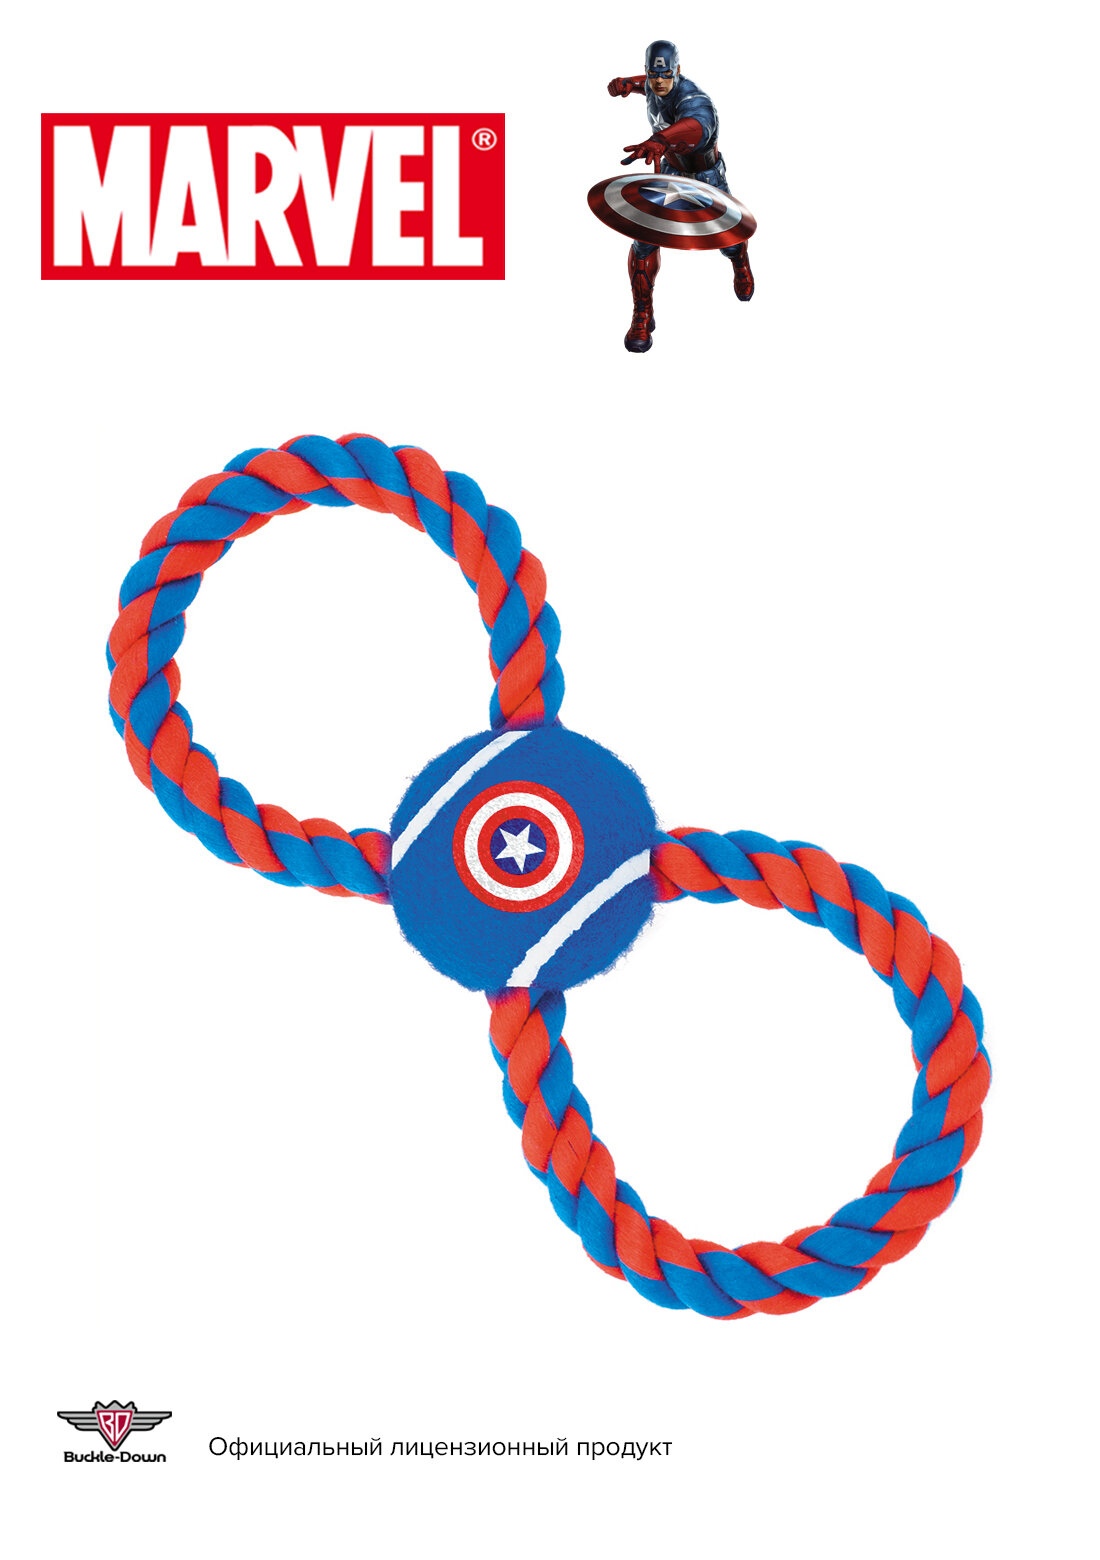 Buckle-Down игрушка для собак мячик на веревке "Капитан Америка" цвет синий 29см